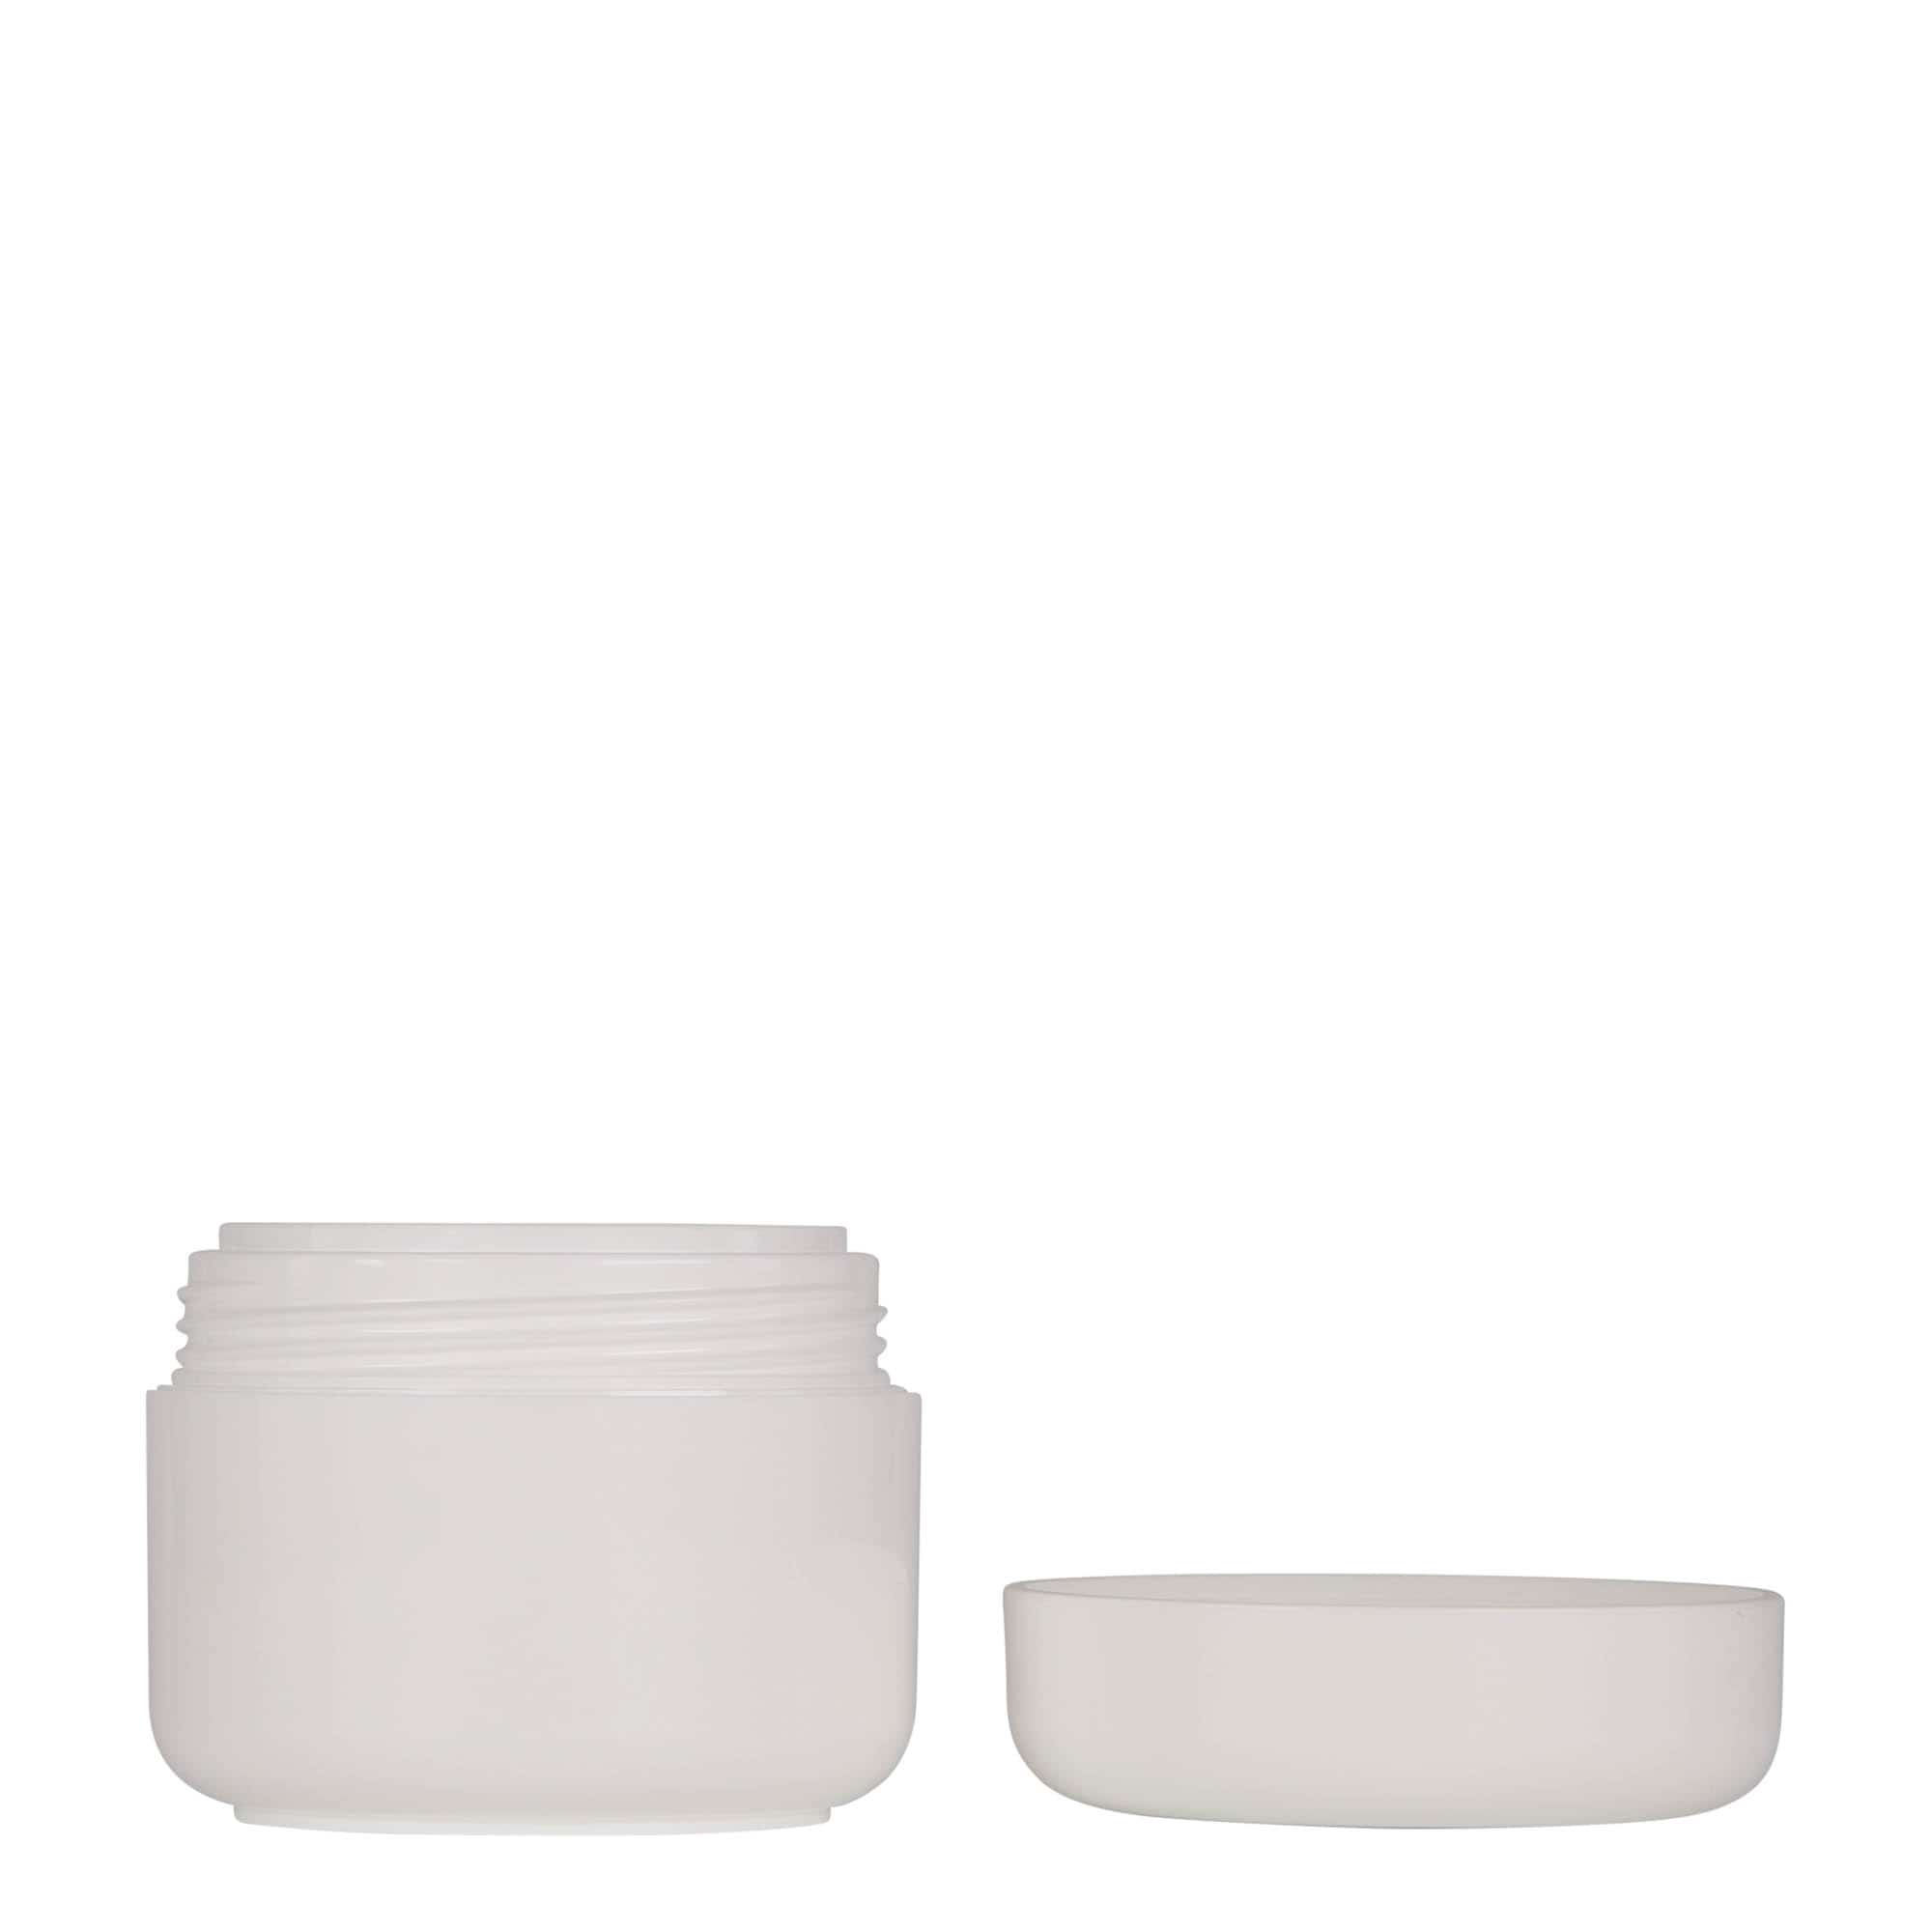 50 ml plastic jar 'Bianca', PP, white, closure: screw cap